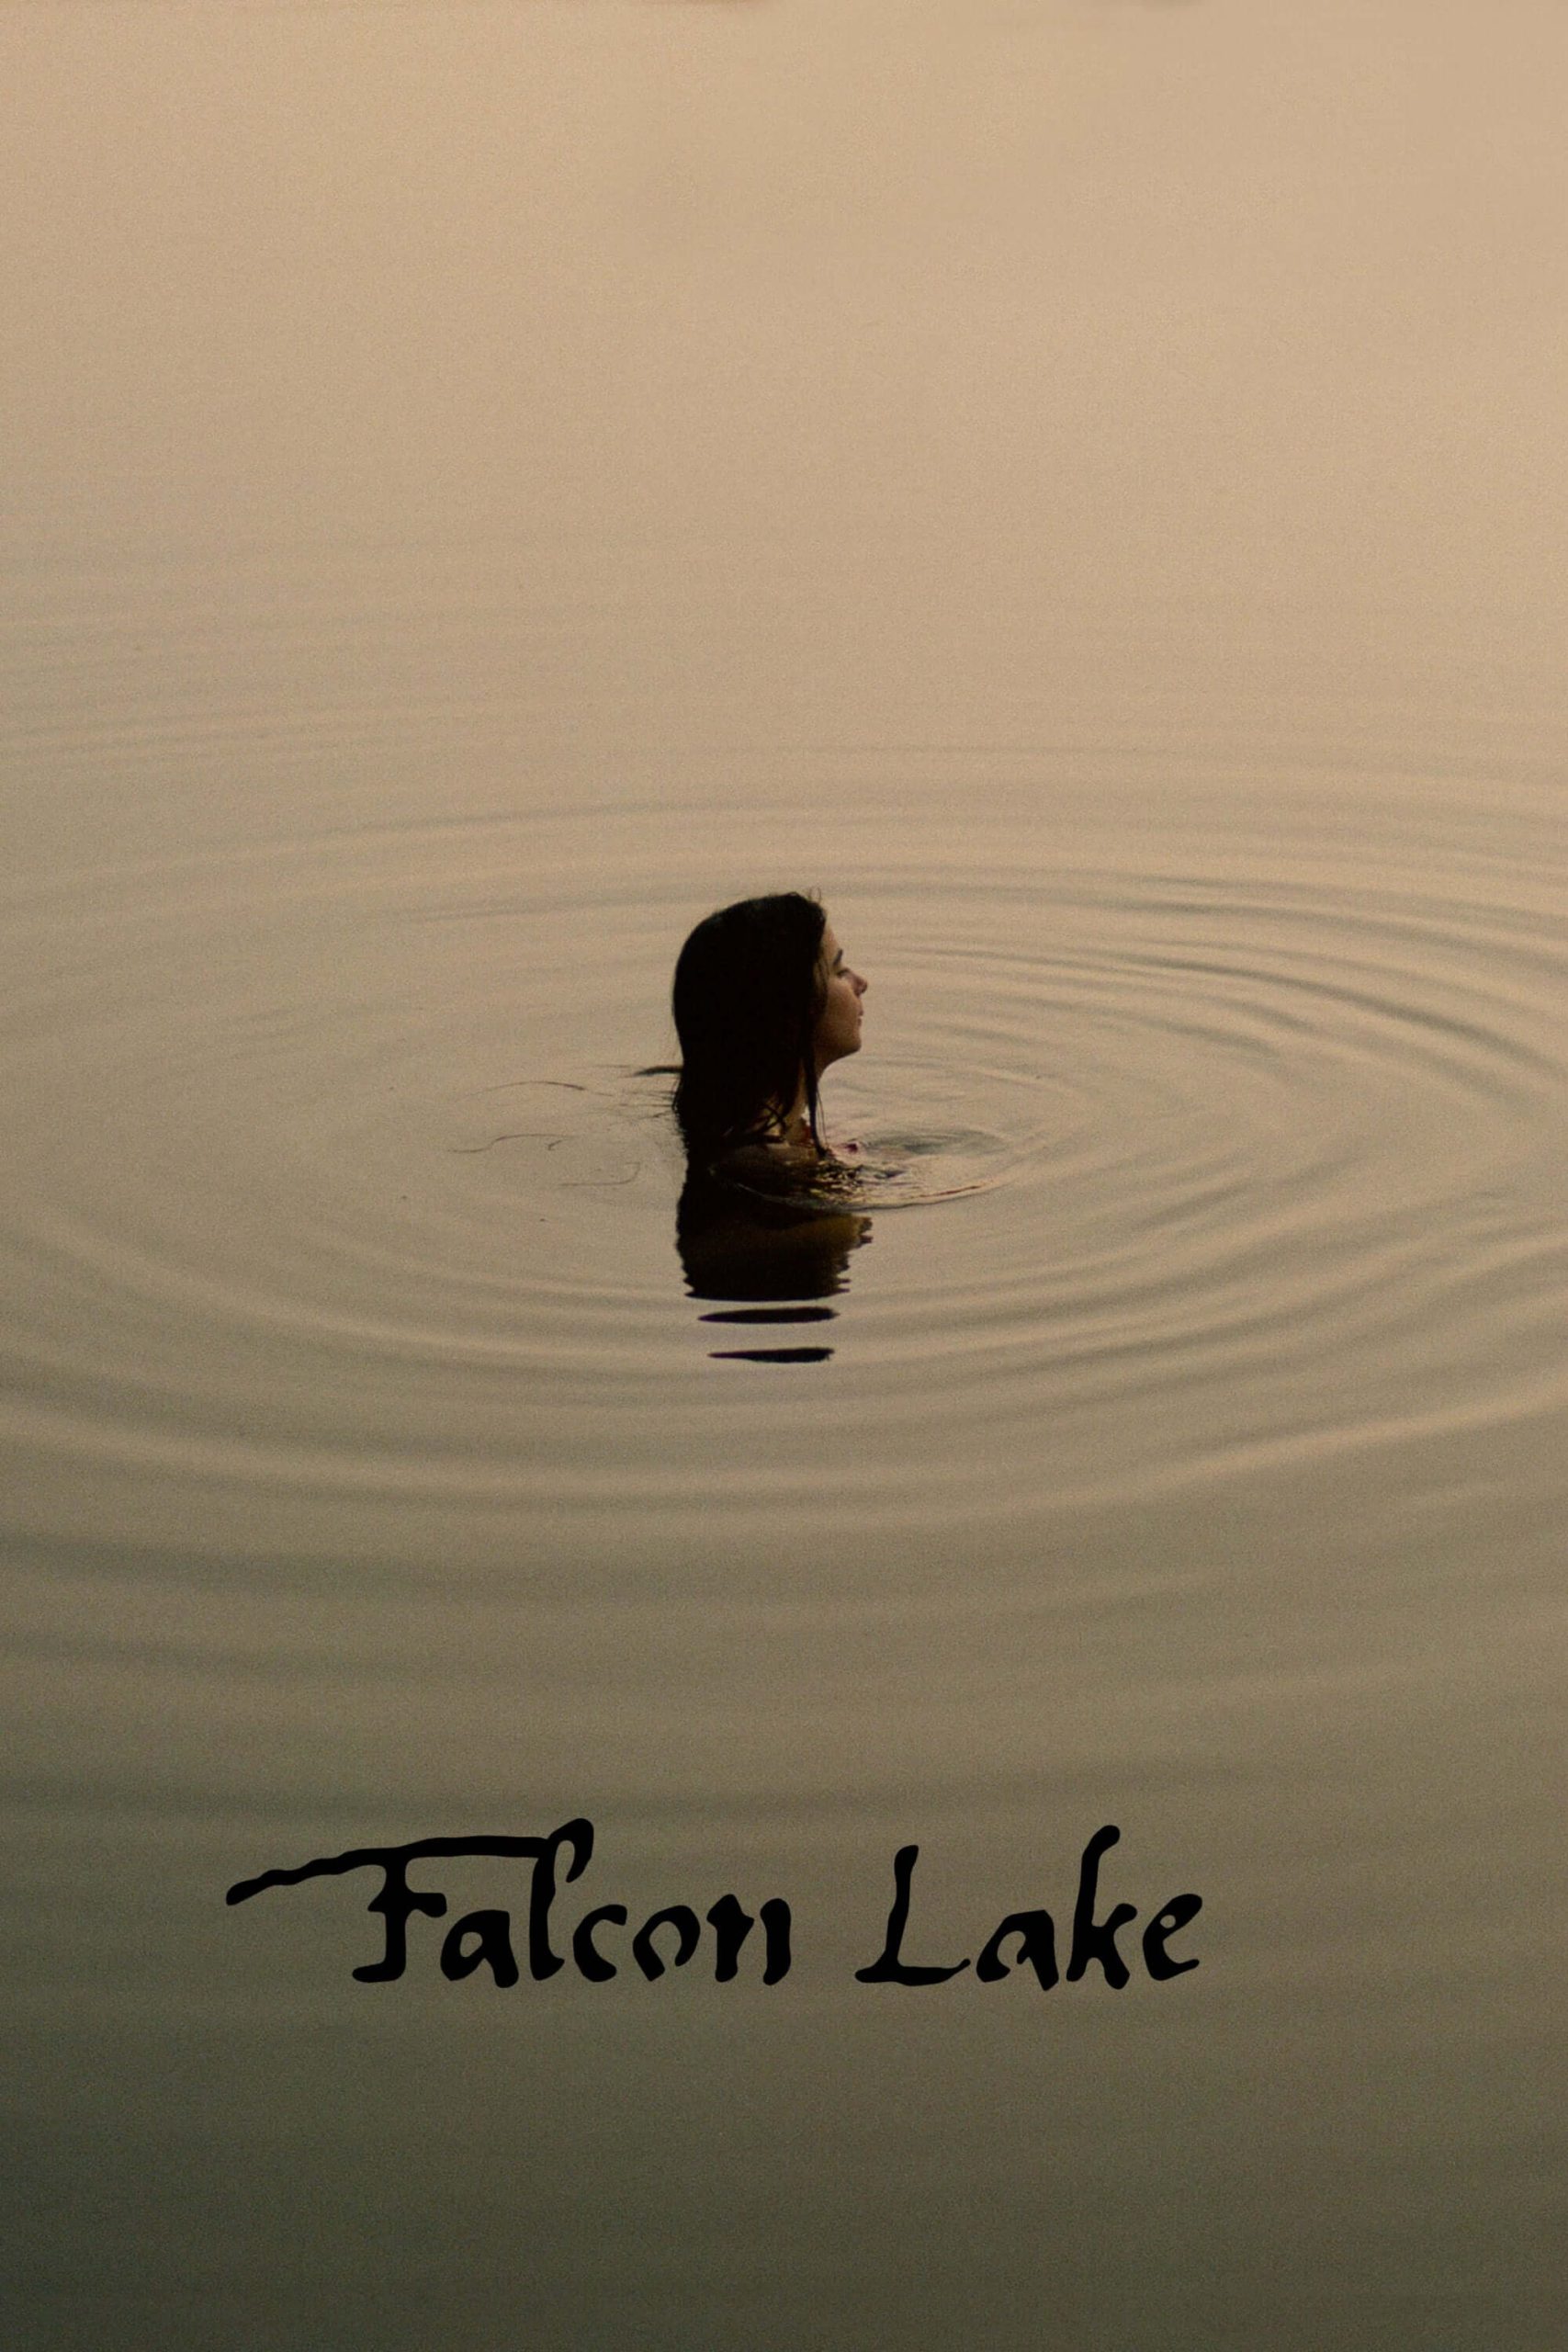 دریاچه فالکون (Falcon Lake)